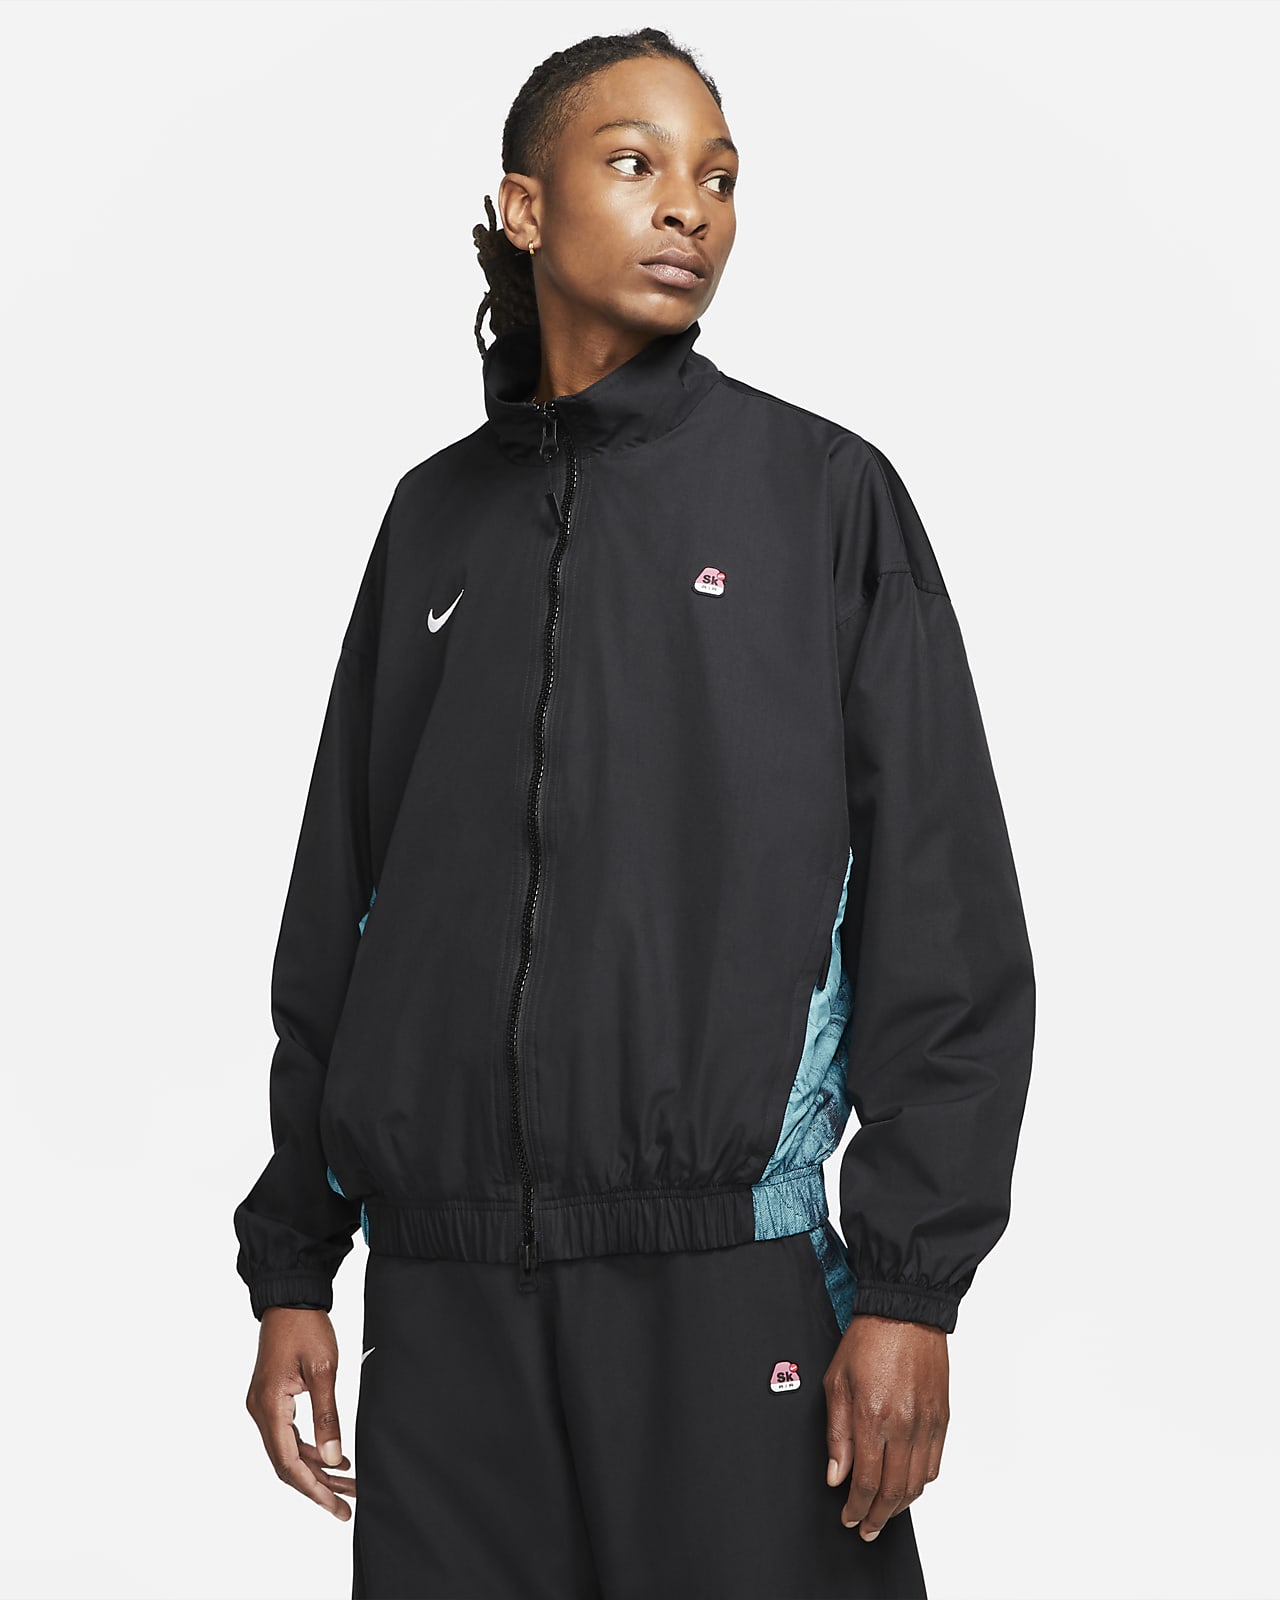 Nike x Skepta Men's Track Jacket